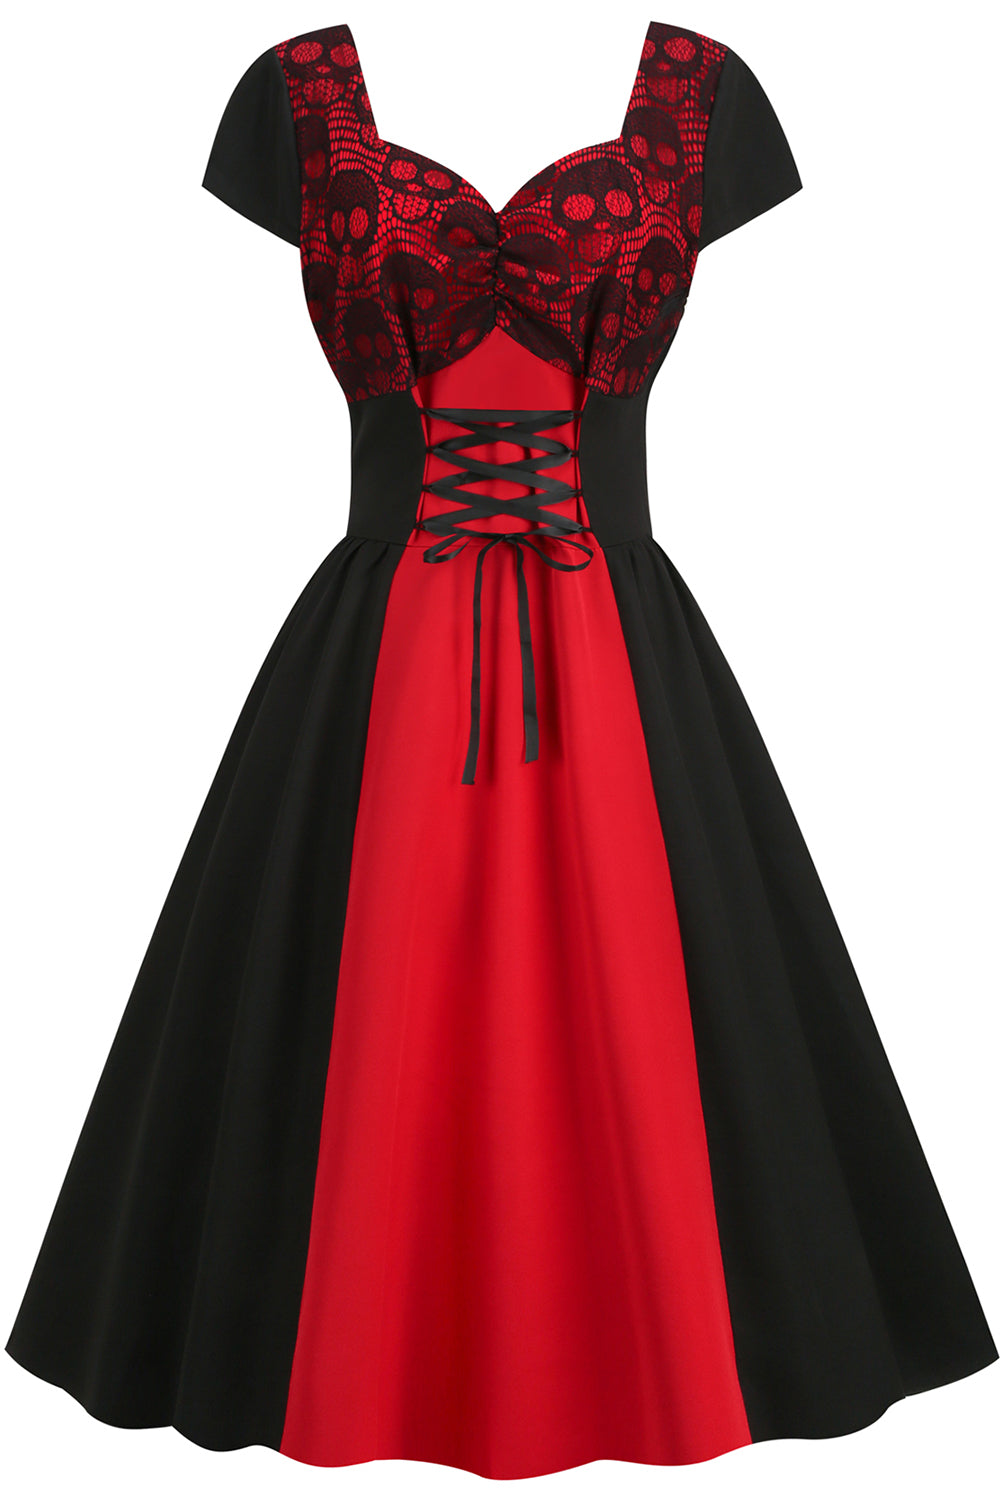 Sort og rød Halloween Vintage kjole fra 1950'erne